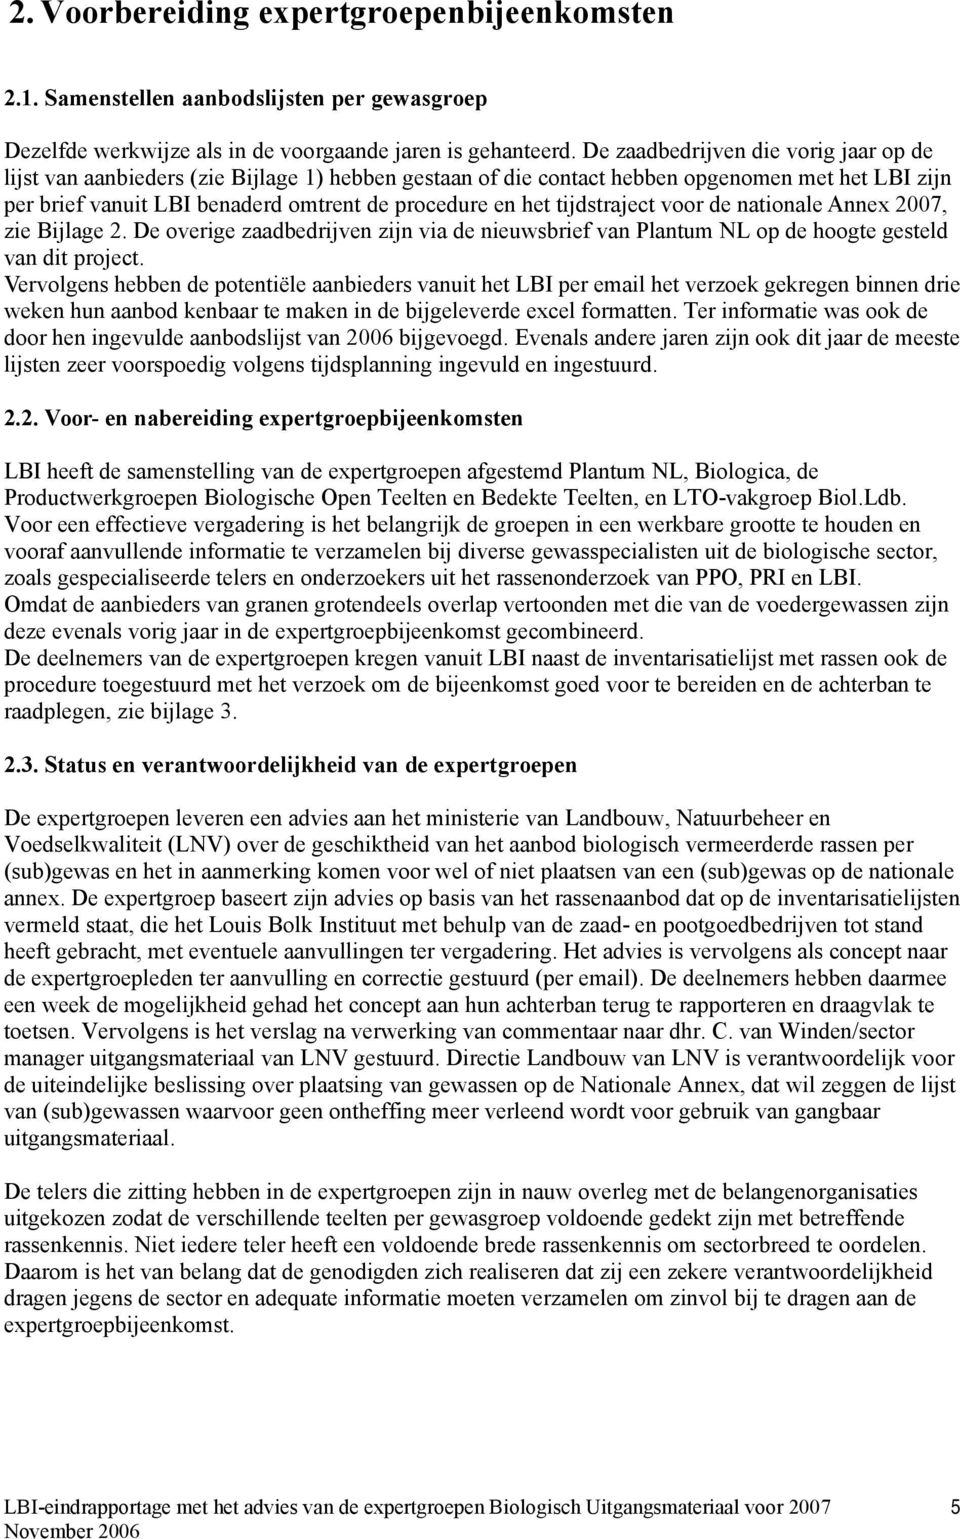 tijdstraject voor de nationale Annex 2007, zie Bijlage 2. De overige zaadbedrijven zijn via de nieuwsbrief van Plantum NL op de hoogte gesteld van dit project.